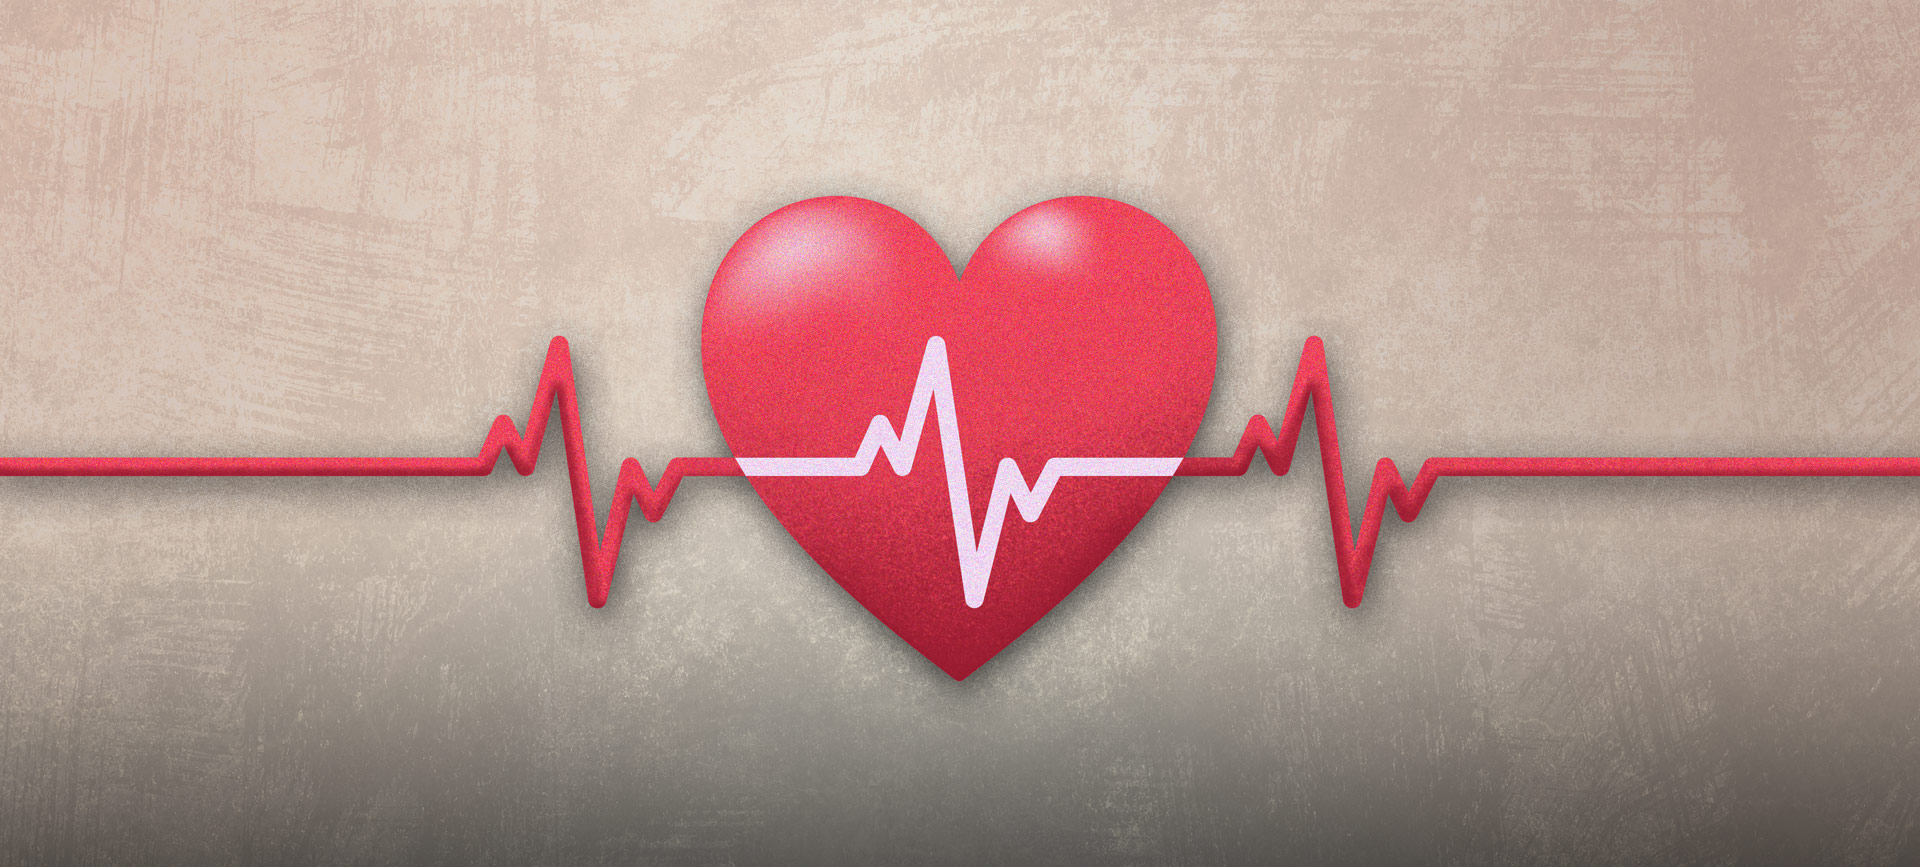 A heart pulse line runs through a red heart against a tan background.